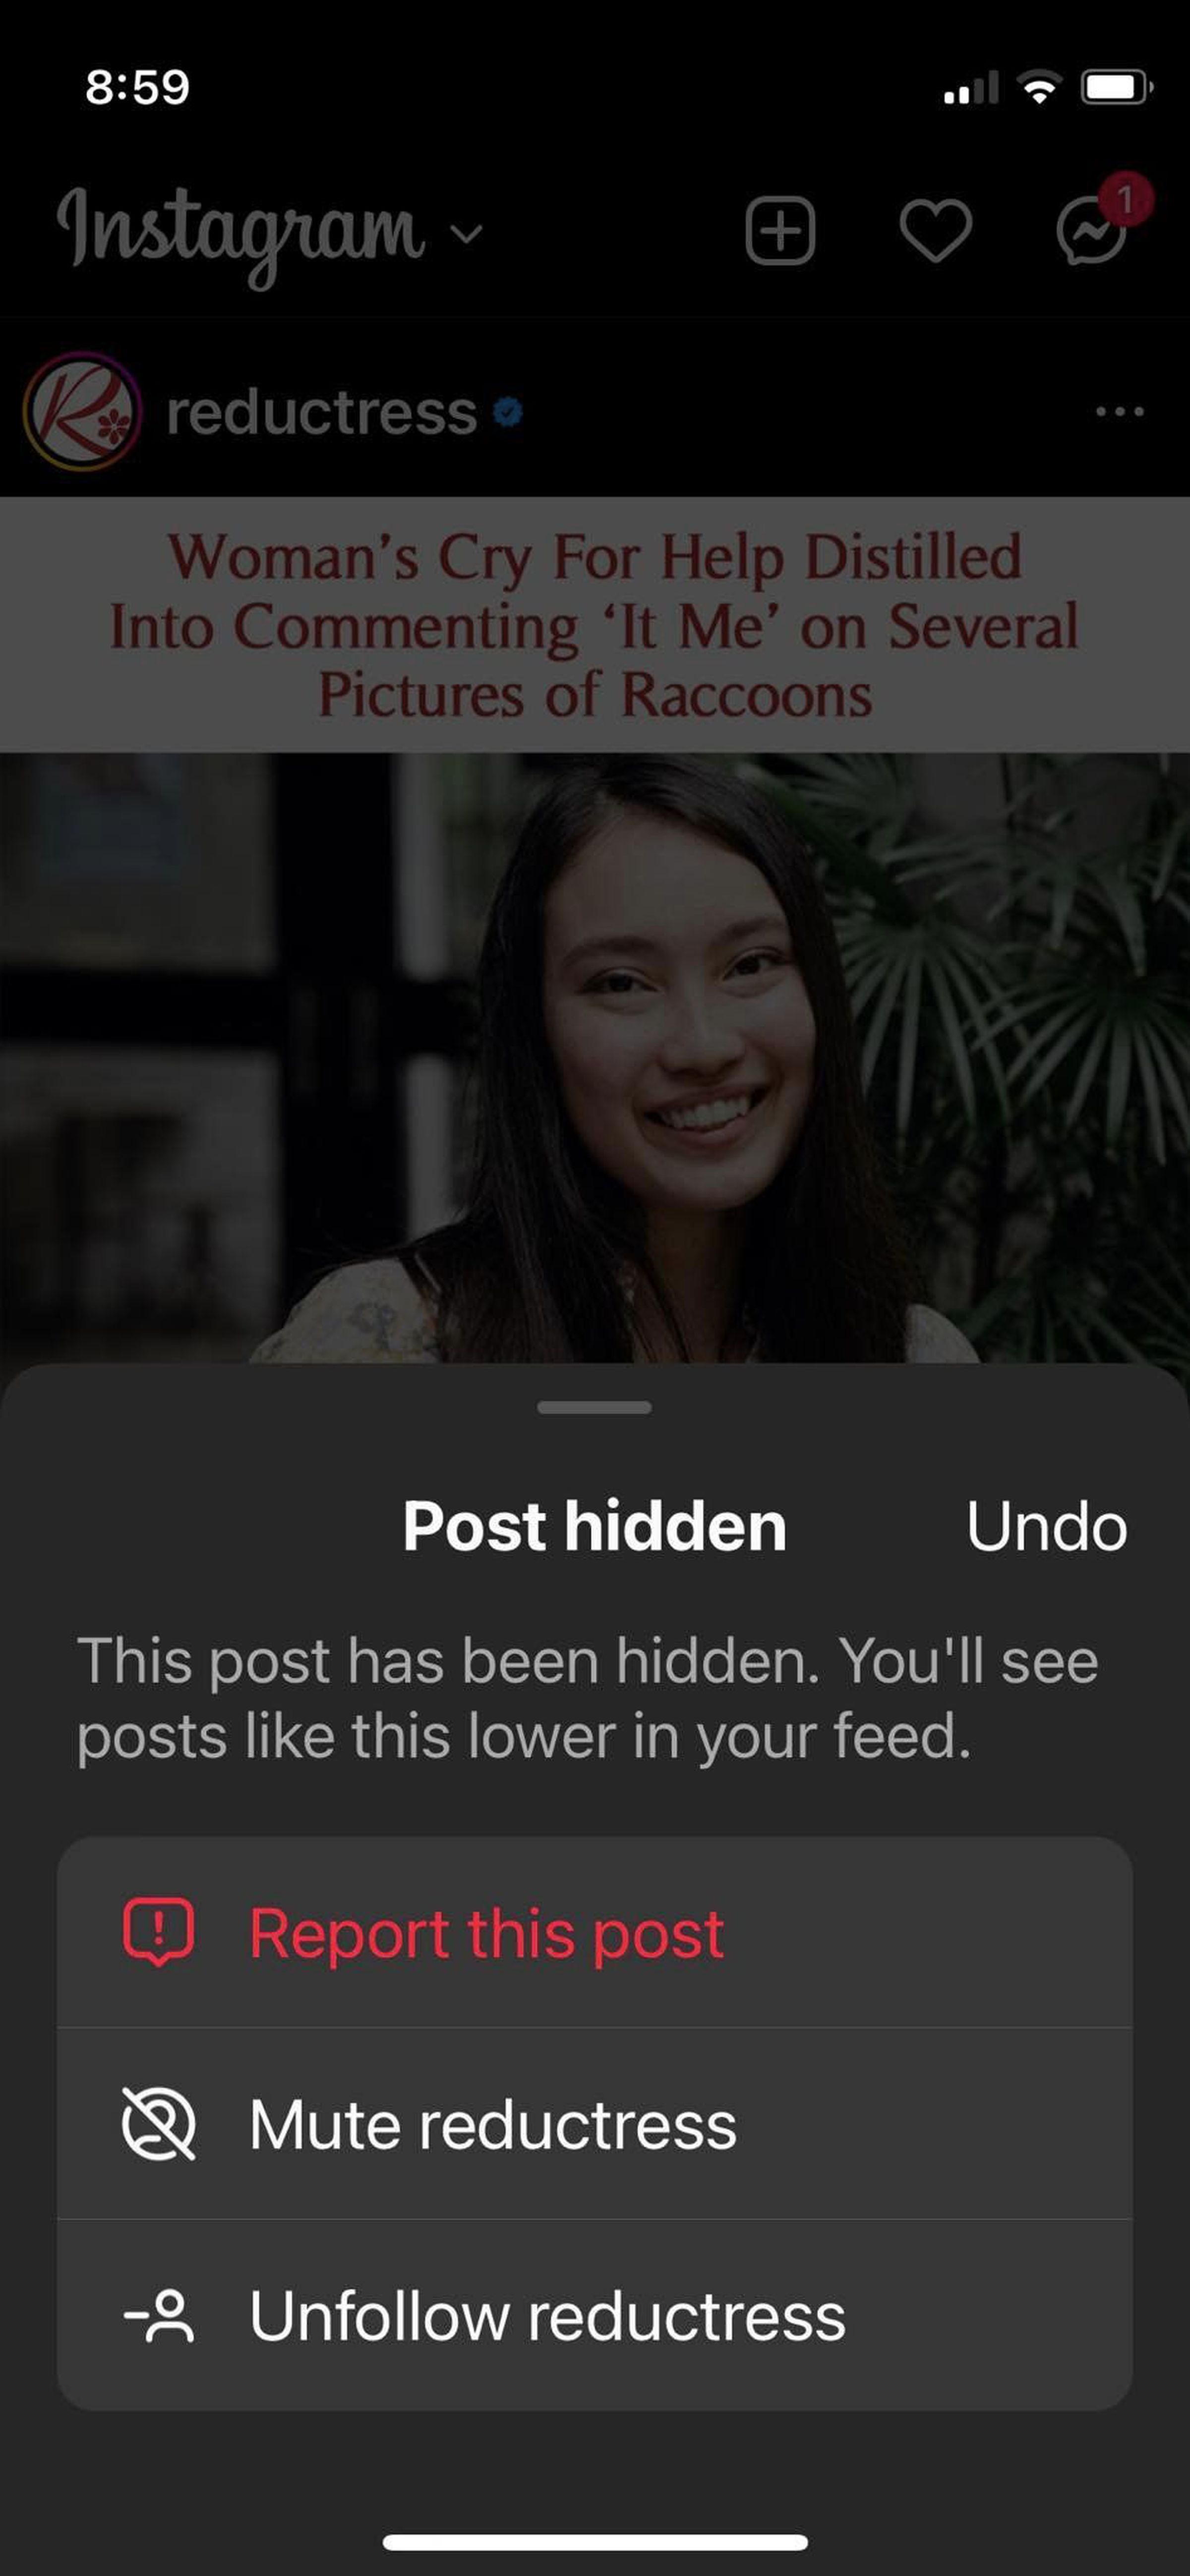 Instagram pop-up menu headed Post hidden with various options.